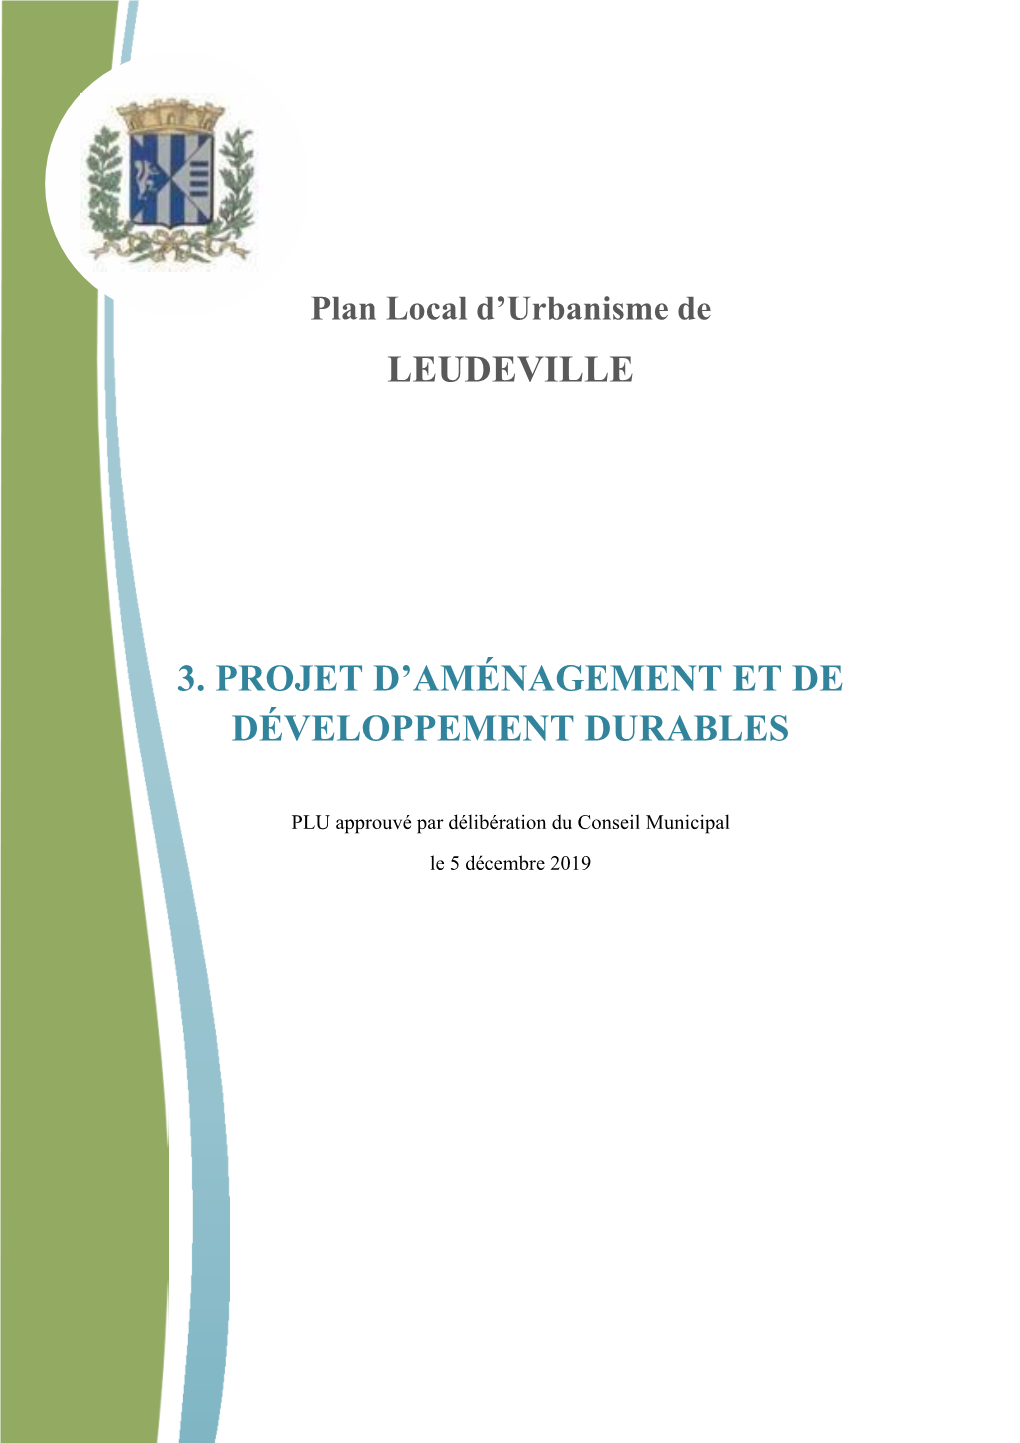 Leudeville 3. Projet D'aménagement Et De